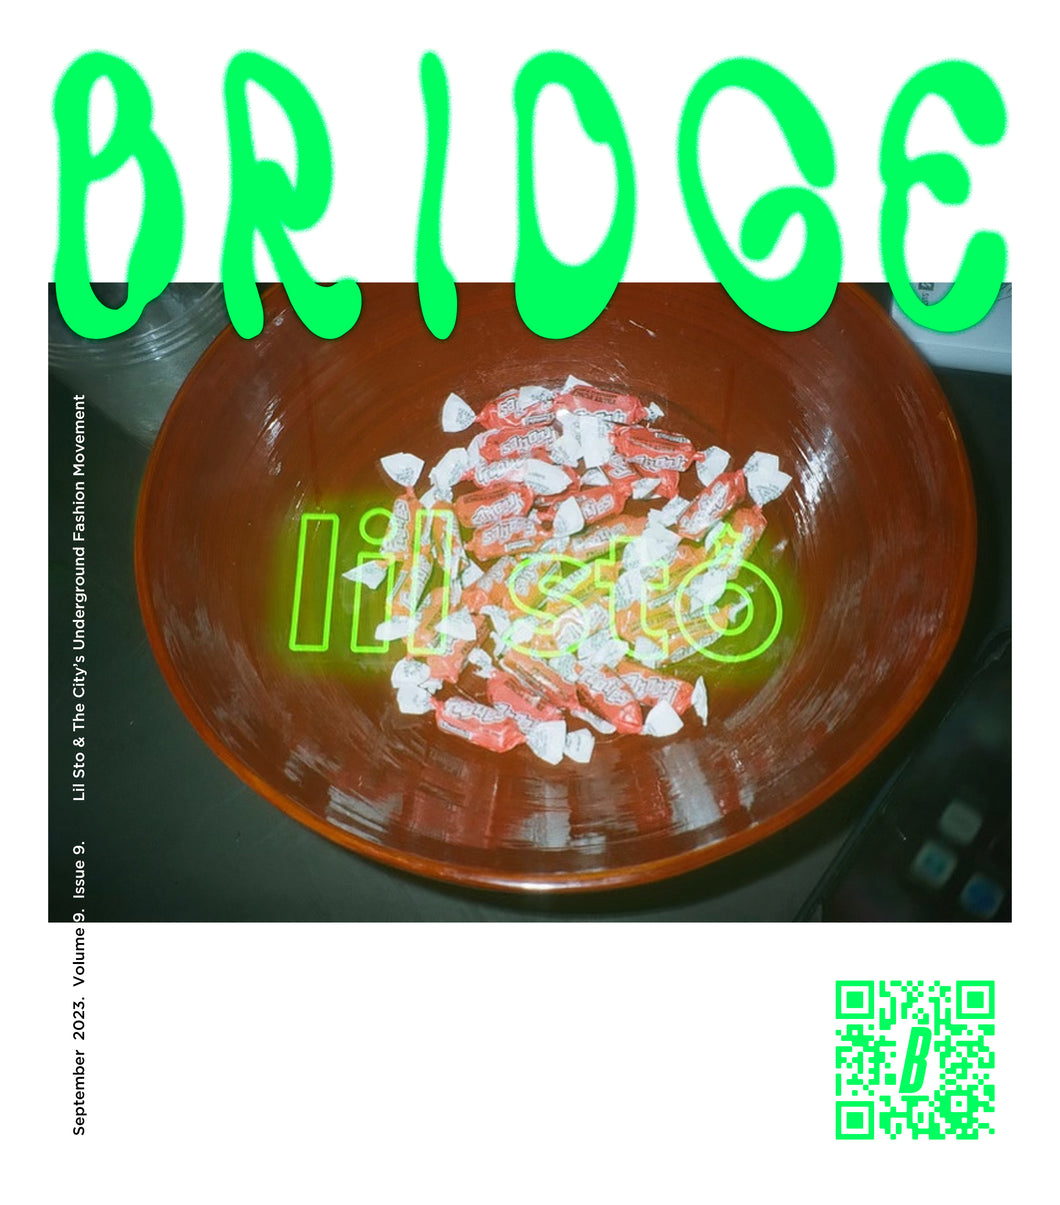 Bridge September '23 Issue